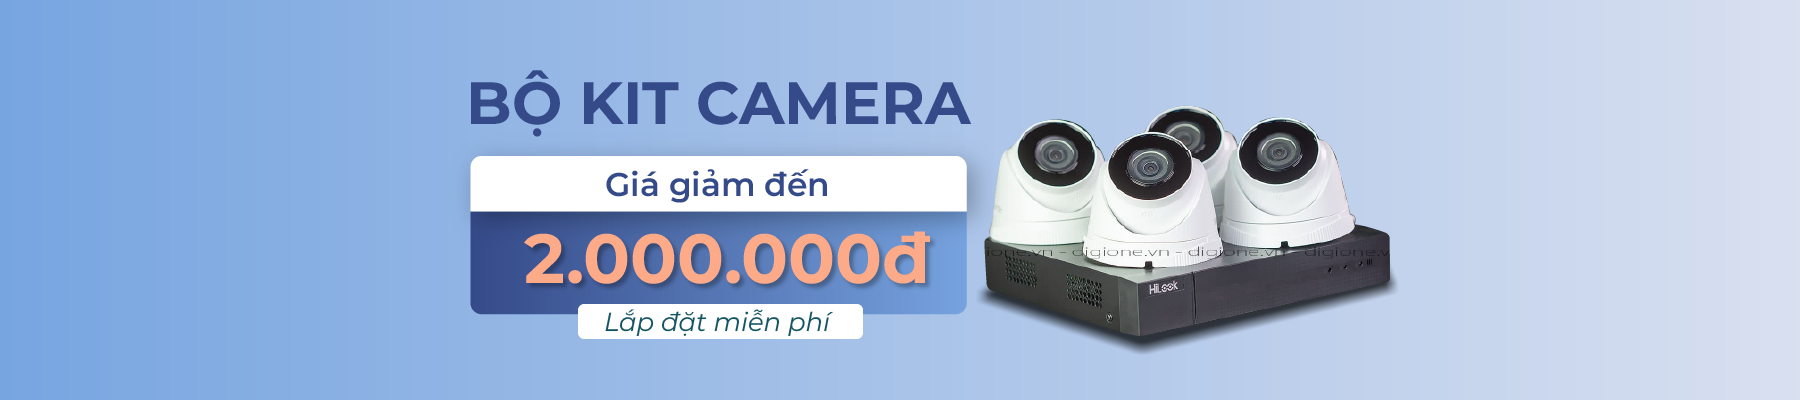 bo-kit-camera